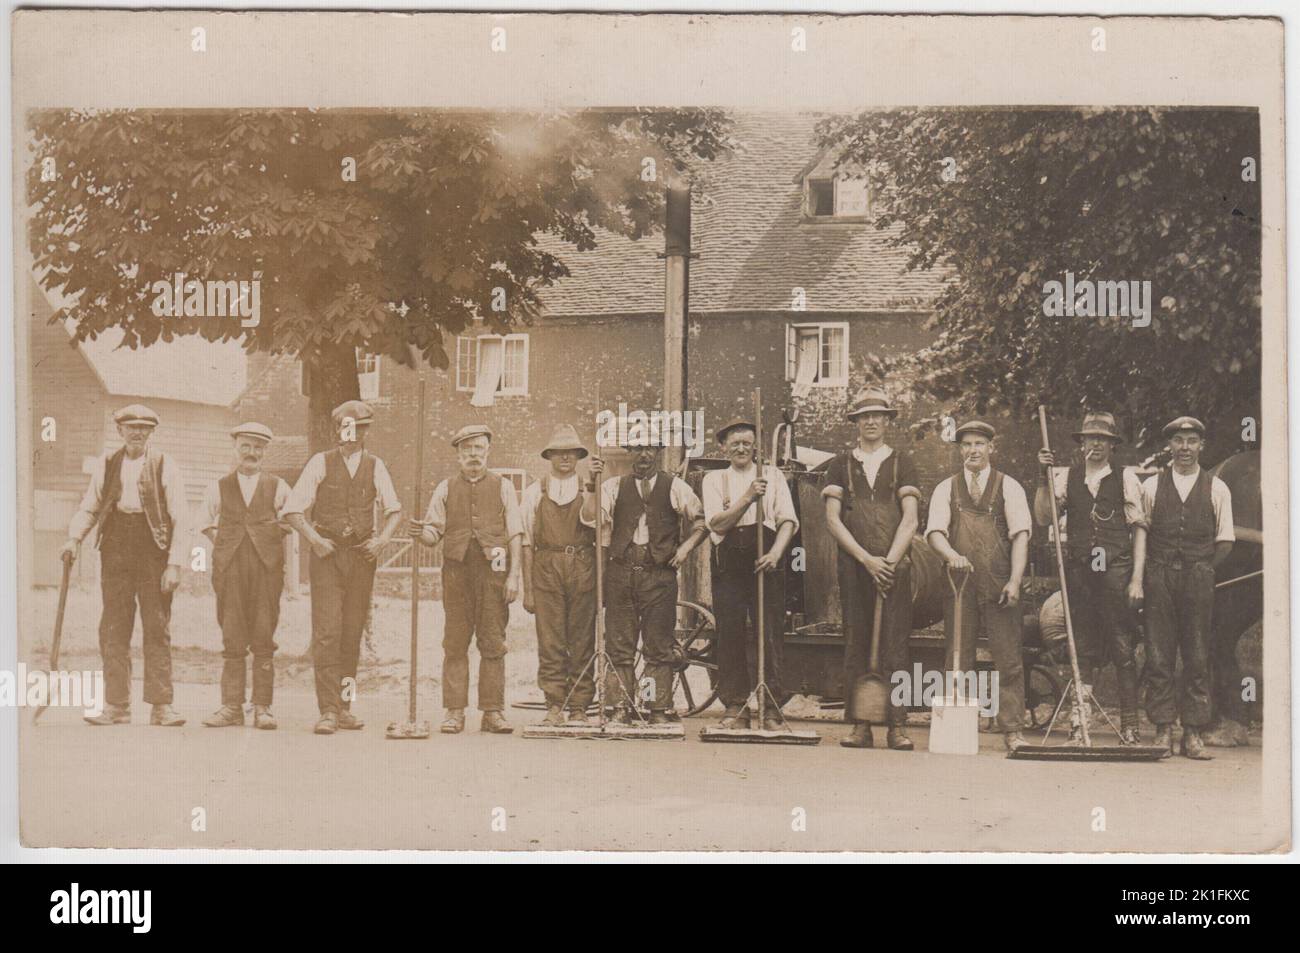 Les fauteurs de route du début du 20th siècle photographiés dans des vêtements de travail, tenant des bêches et des brosses. Ils sont photographiés devant une machine à vapeur tirée par des chevaux Banque D'Images